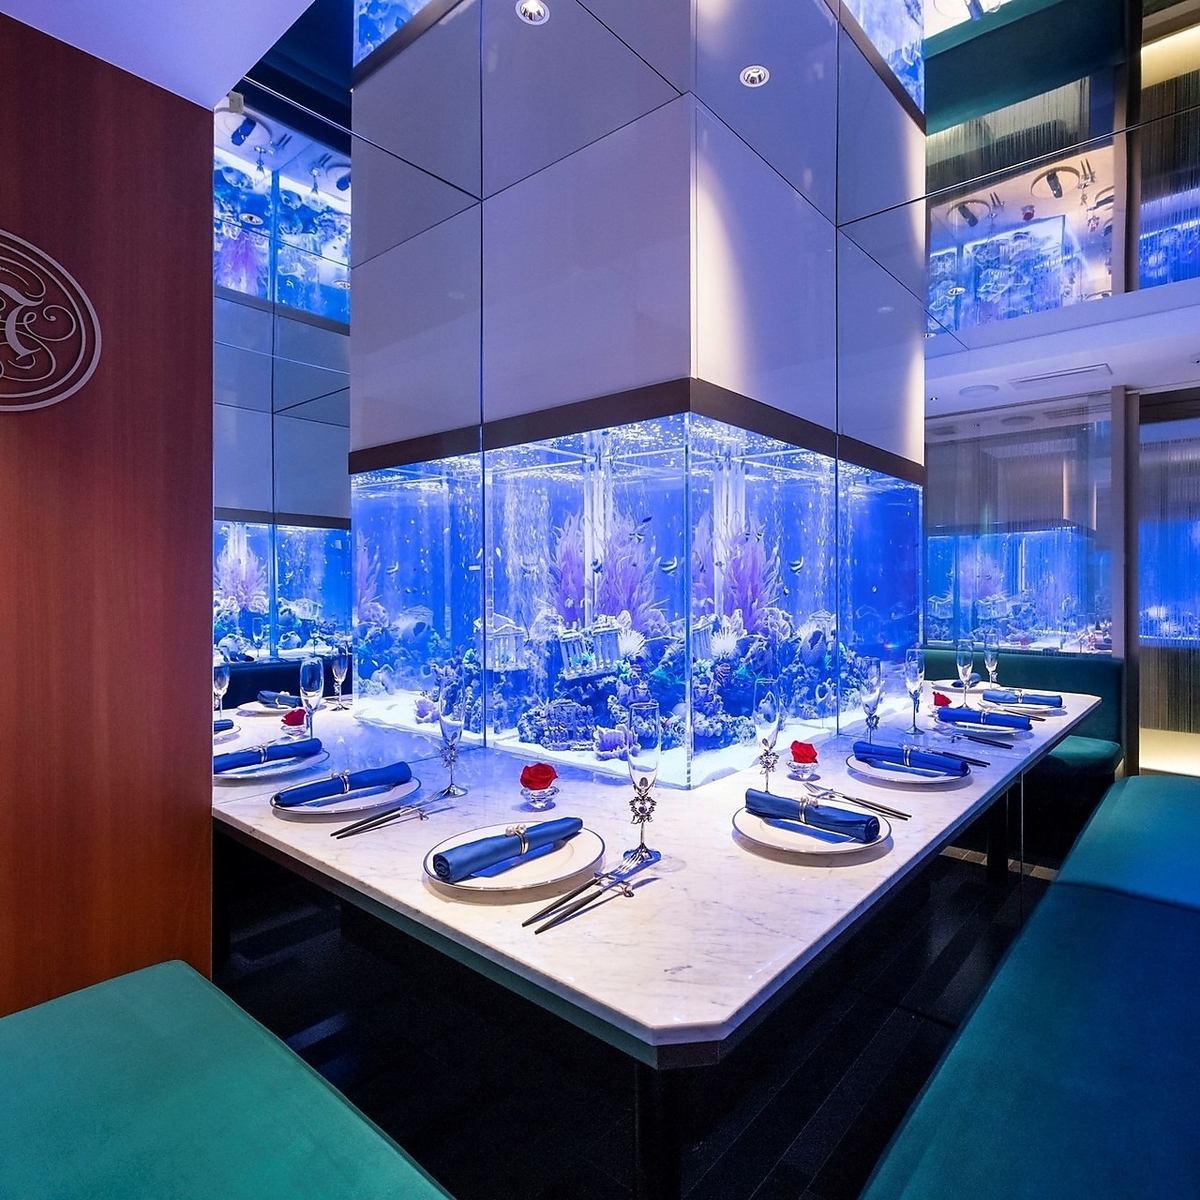 由著名設計師松本哲也設計的傑作水族館餐廳